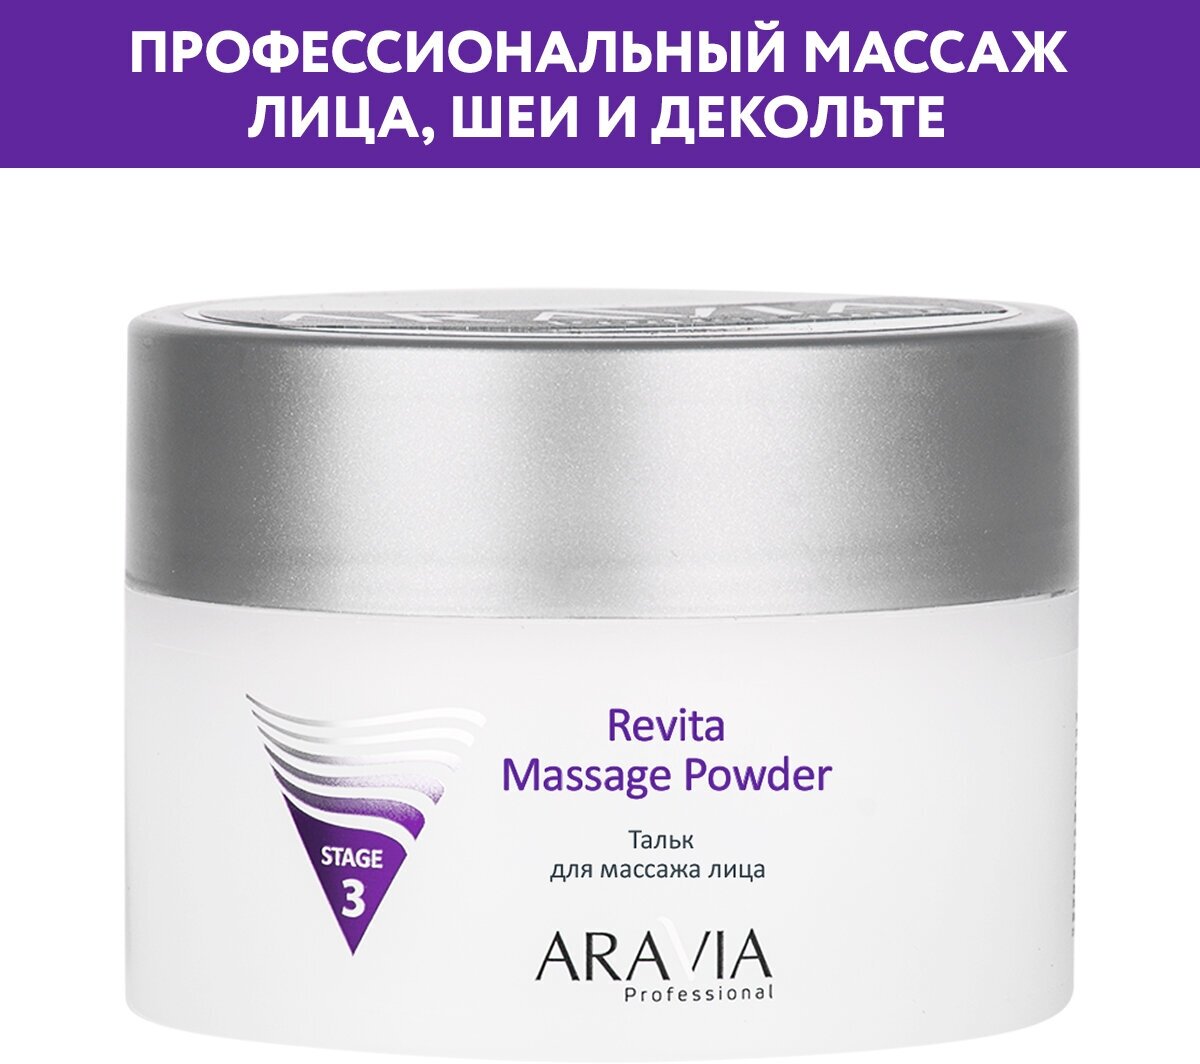     Revita Massage Powder, 150 